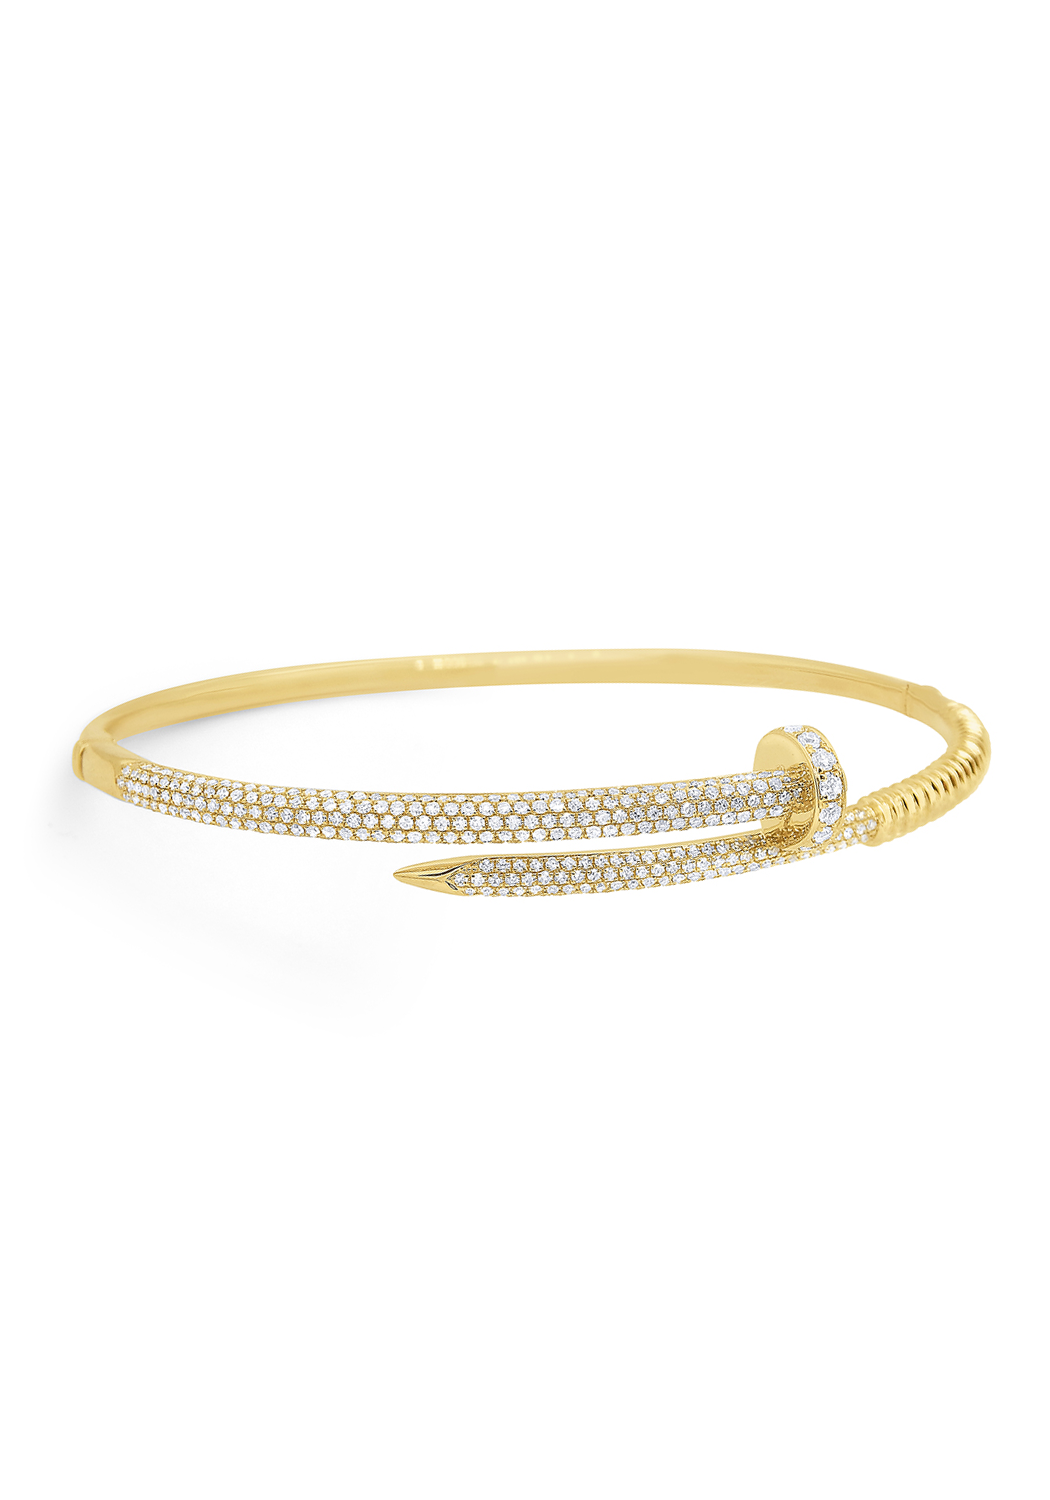 CRB6048117 - Juste un Clou bracelet - Pink gold - Cartier